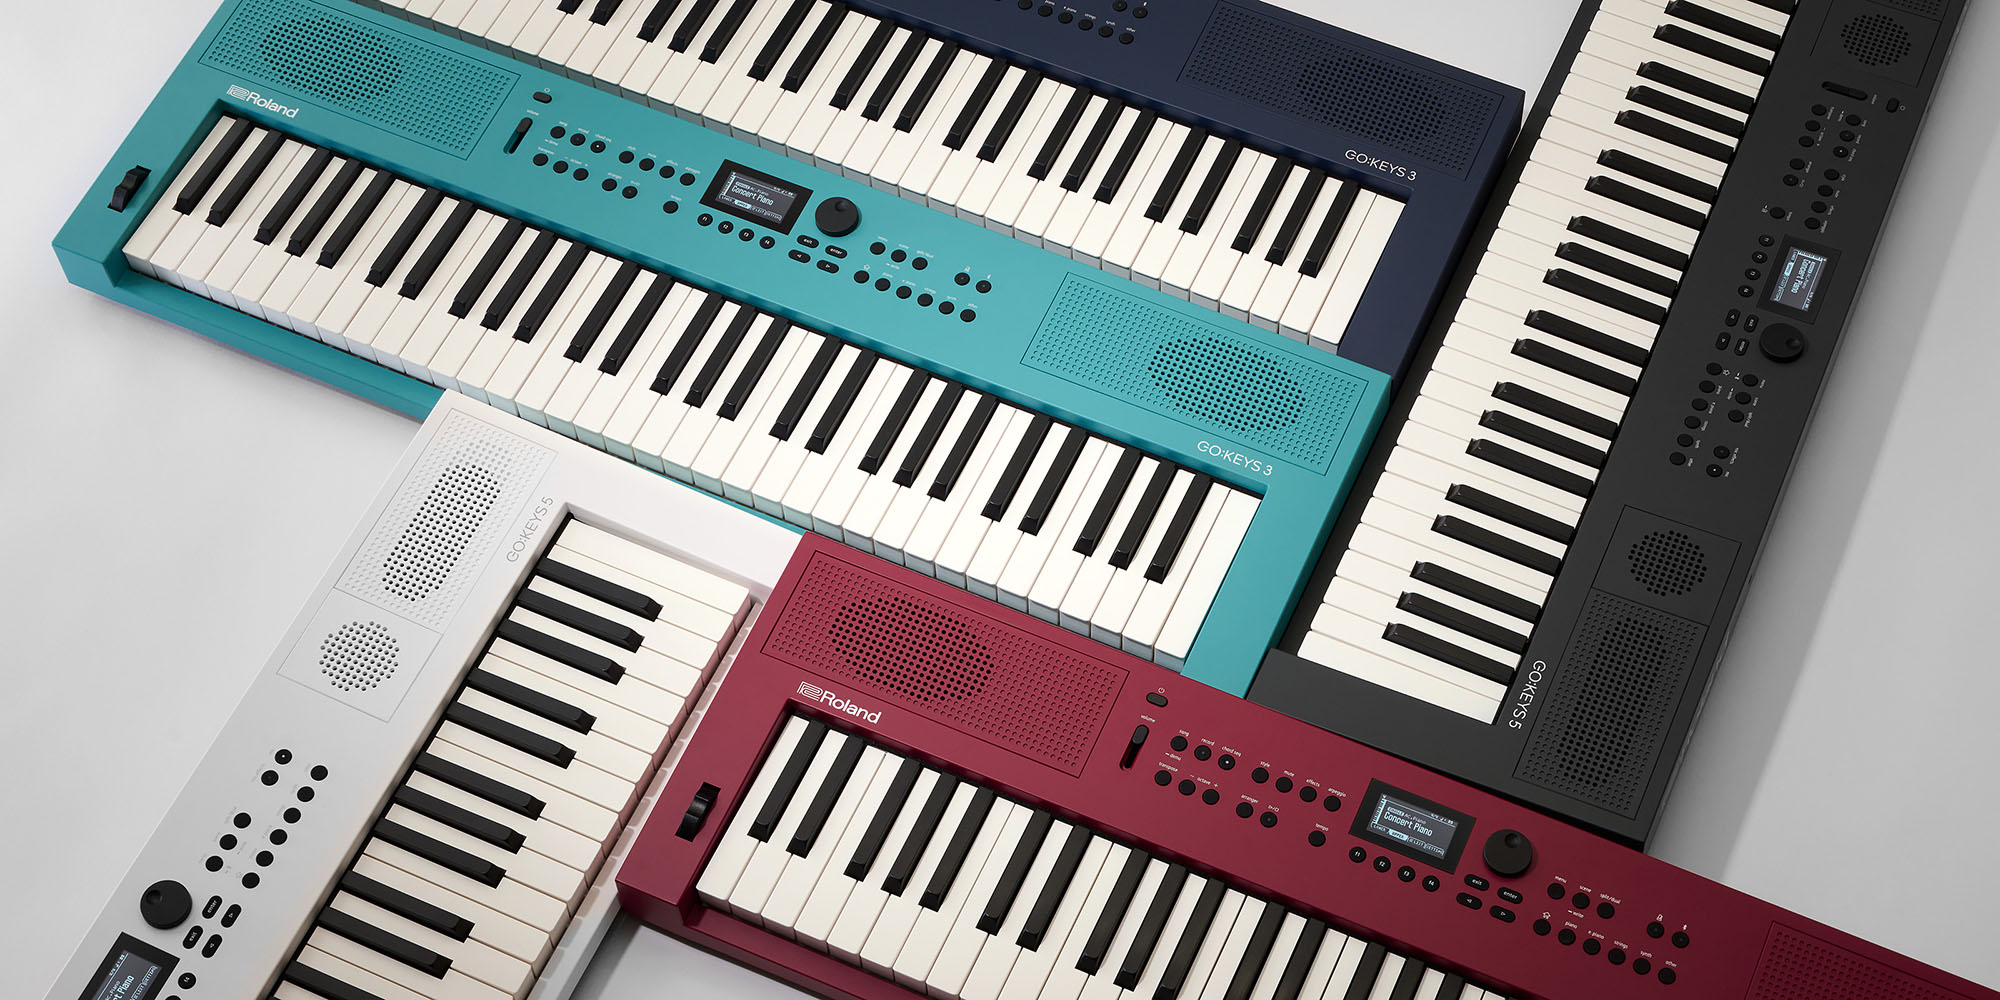 Roland Przedstawia Keyboardy do Tworzenia Muzyki  GO:KEYS 3 i GO:KEYS 5